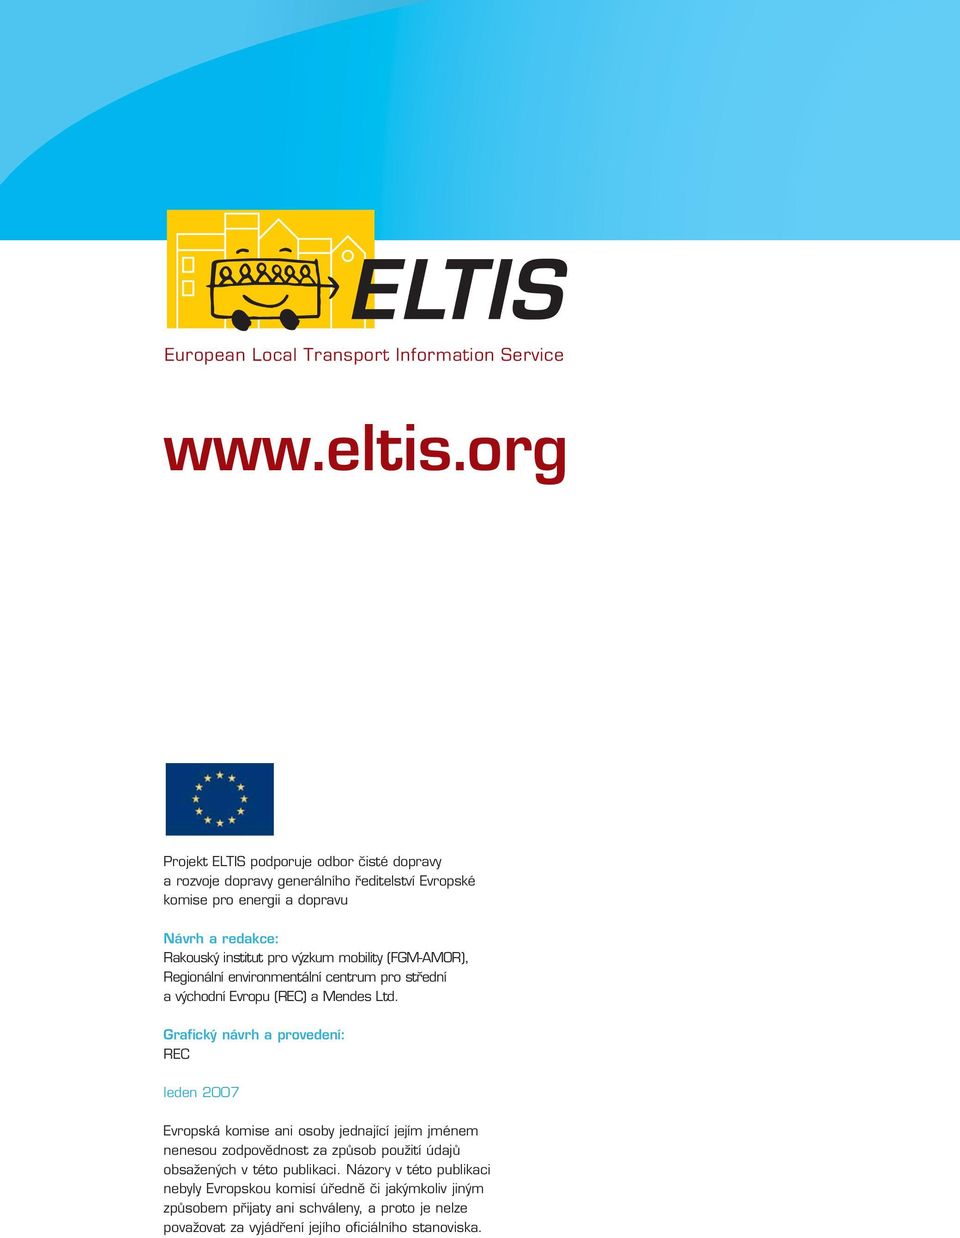 výzkum mobility (FGM-AMOR), Regionální environmentální centrum pro střední a východní Evropu (REC) a Mendes Ltd.